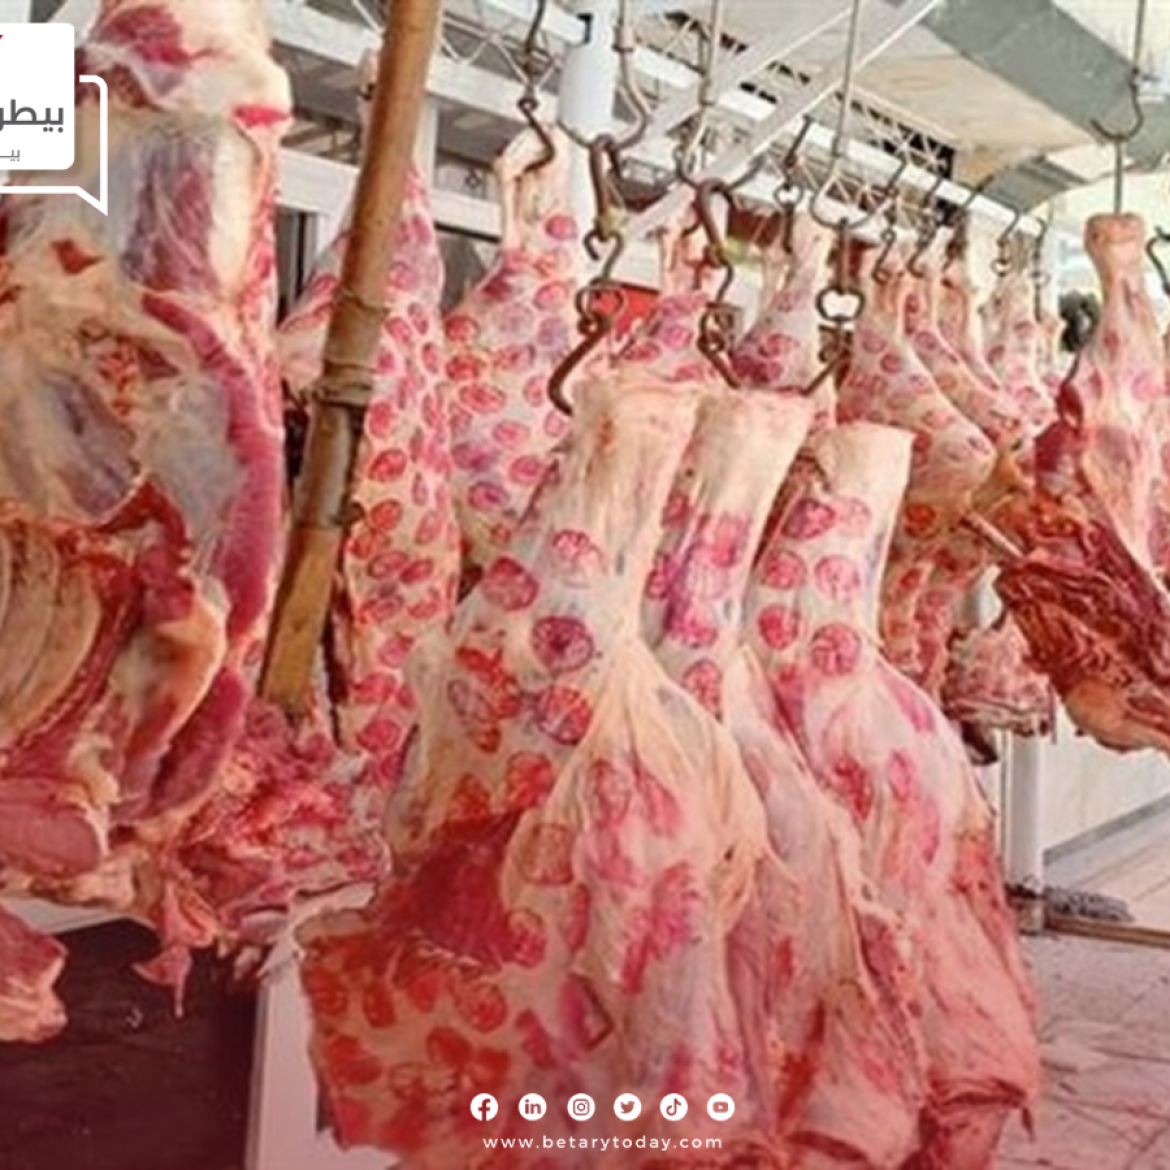 ما هي أسعار اللحوم الحمراء البلدي والمستوردة اليوم الأحد في الأسواق